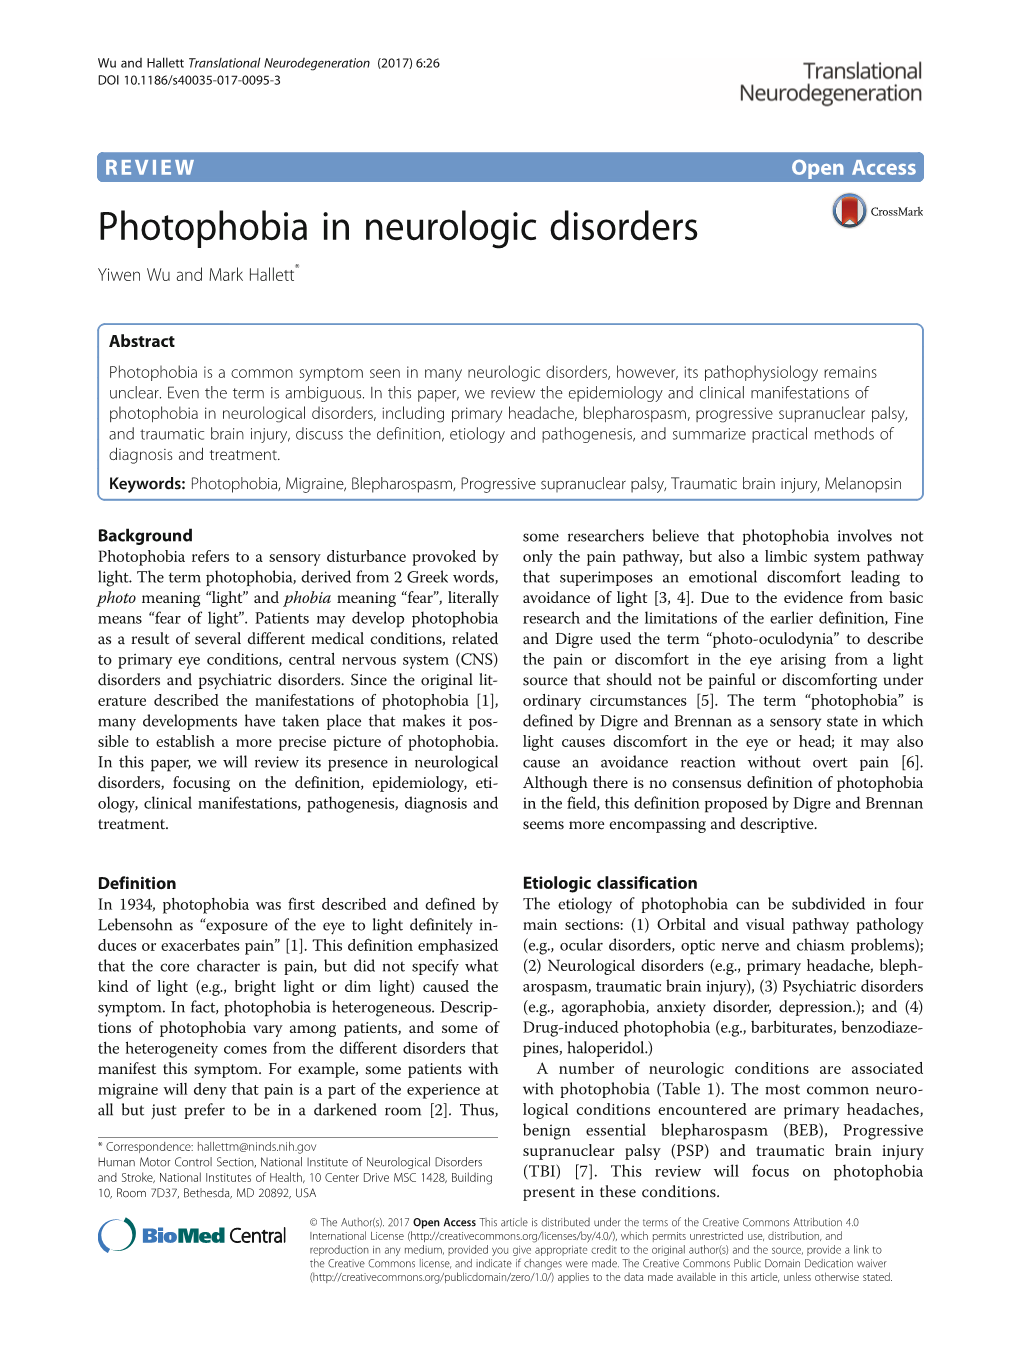 Photophobia in Neurologic Disorders Yiwen Wu and Mark Hallett*